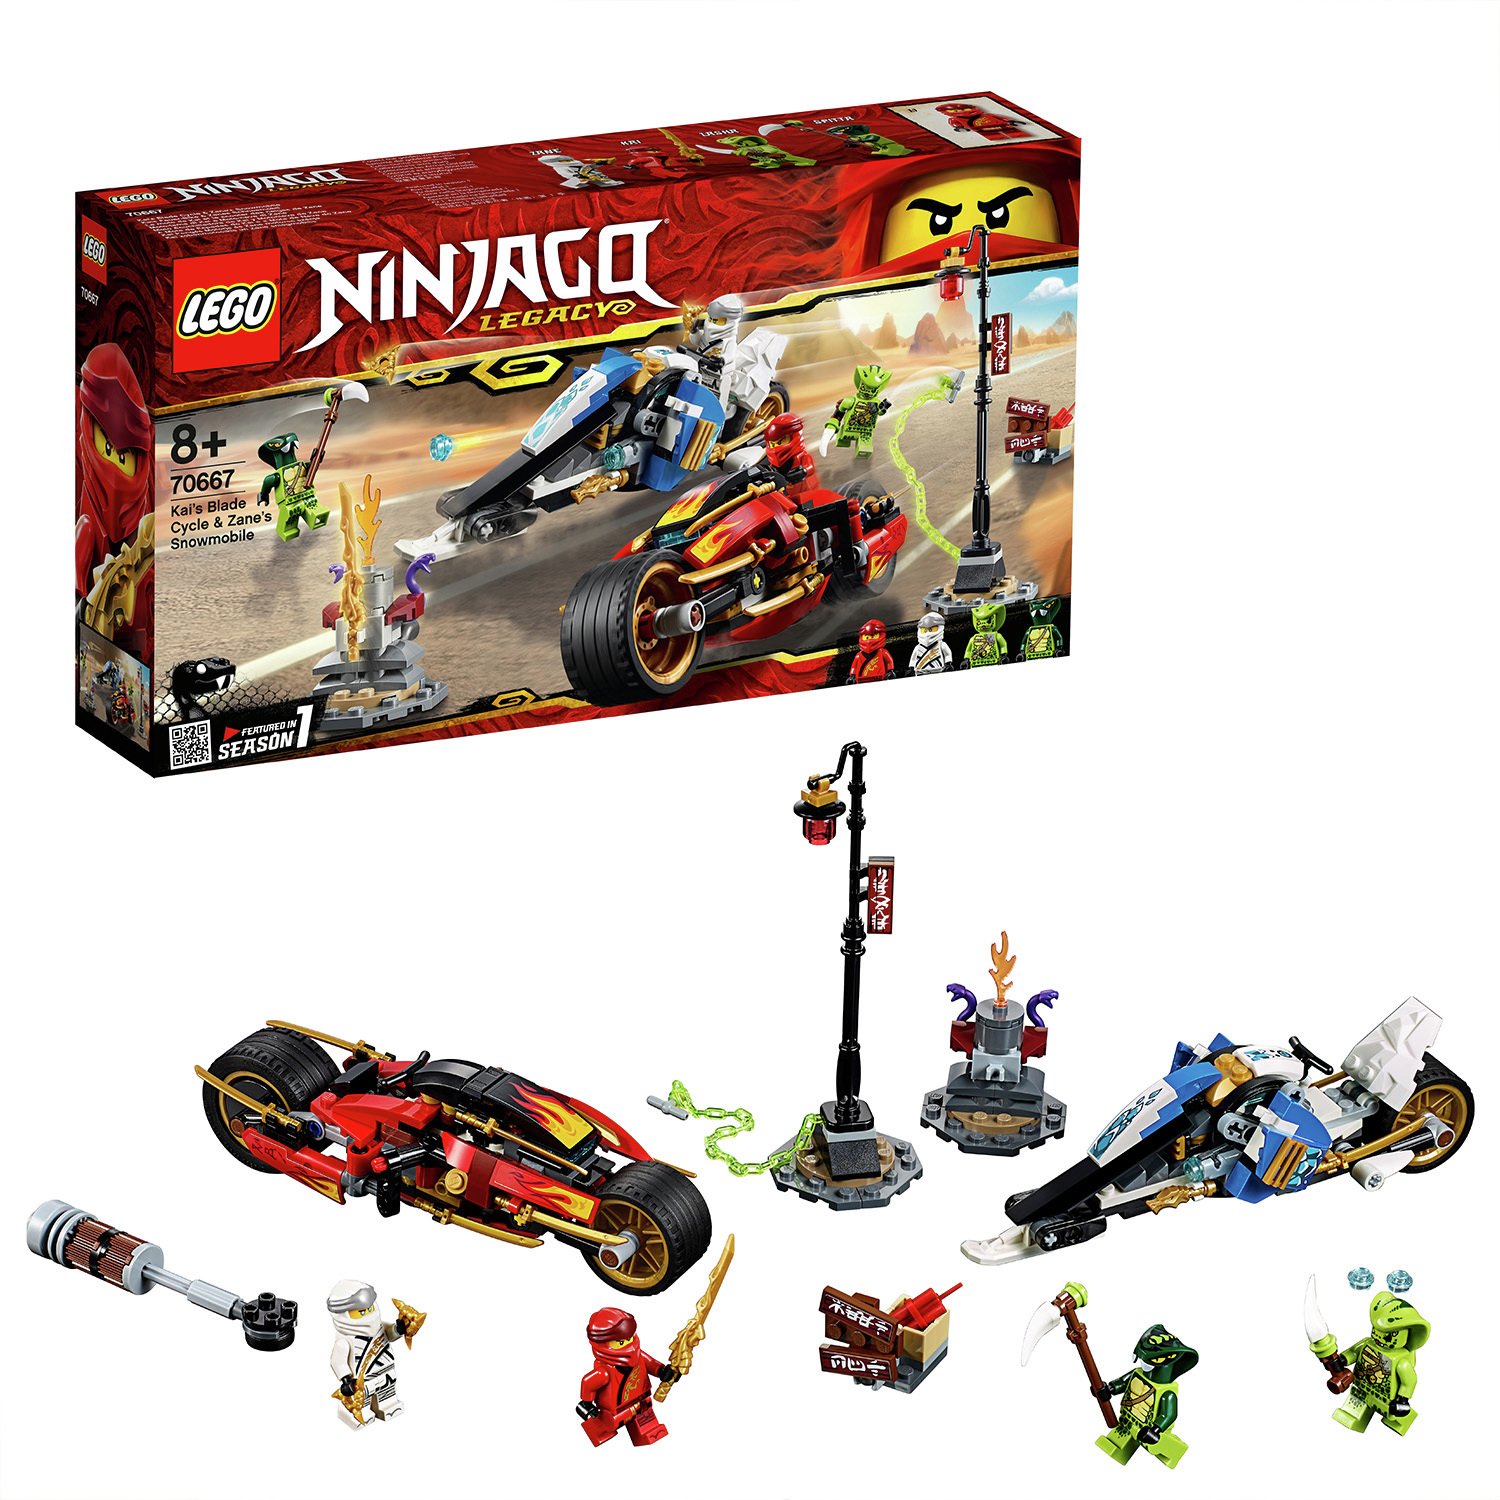 LEGO Ninjago Kais Blade Cycle & Zane's Toy Vehicles - 70667